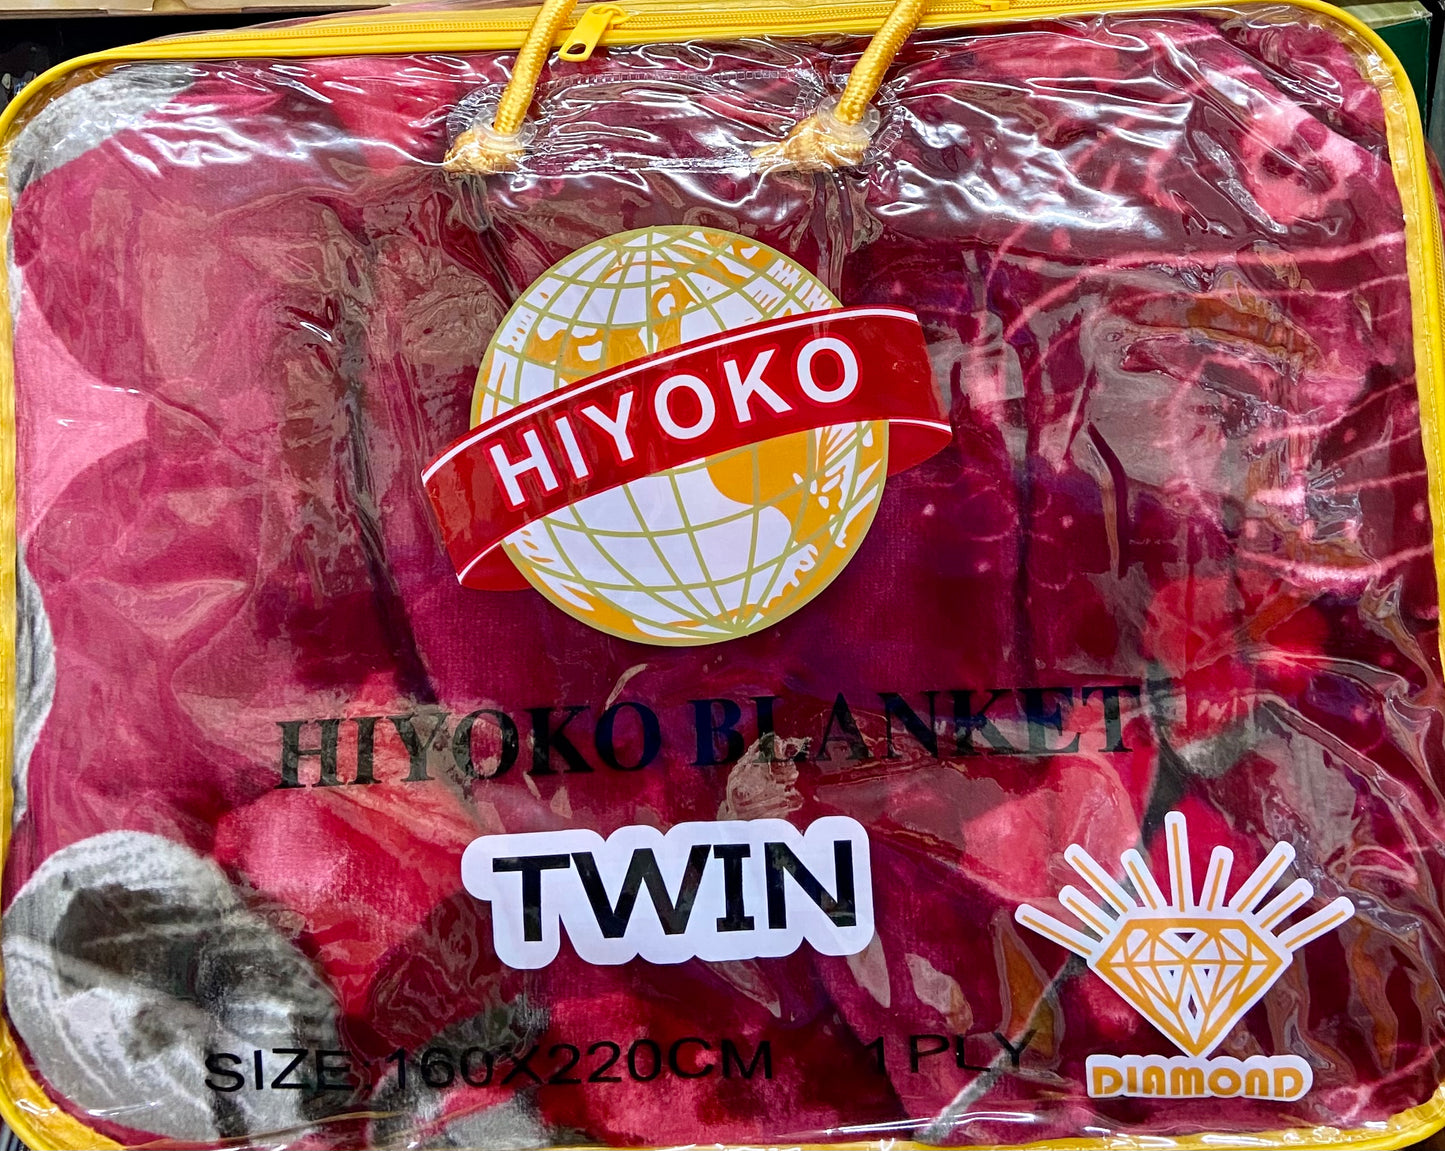 Hiyoko Blanket - Twin